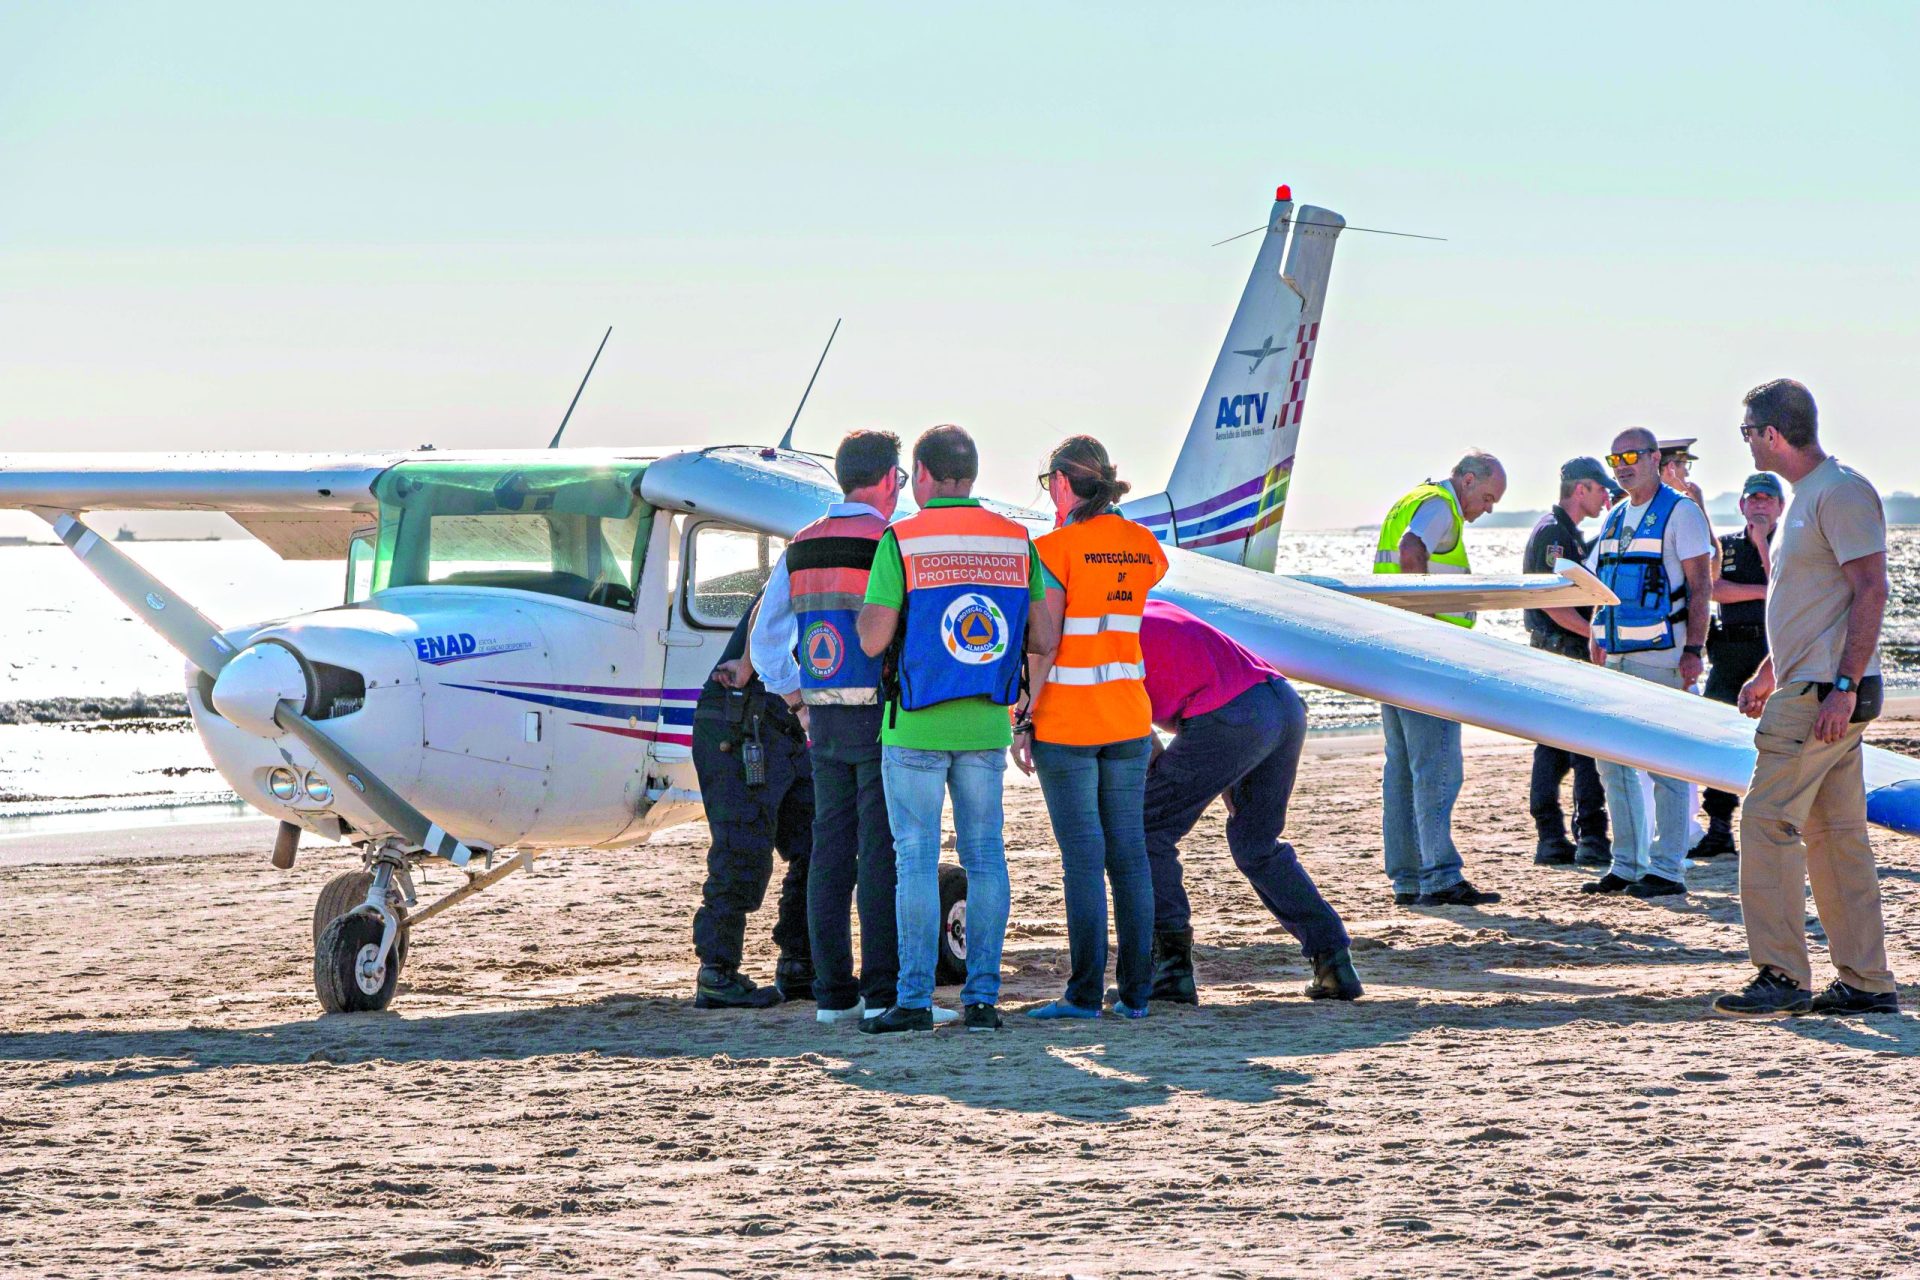 Tragédia. Avioneta aterra em praia da Caparica e mata duas pessoas